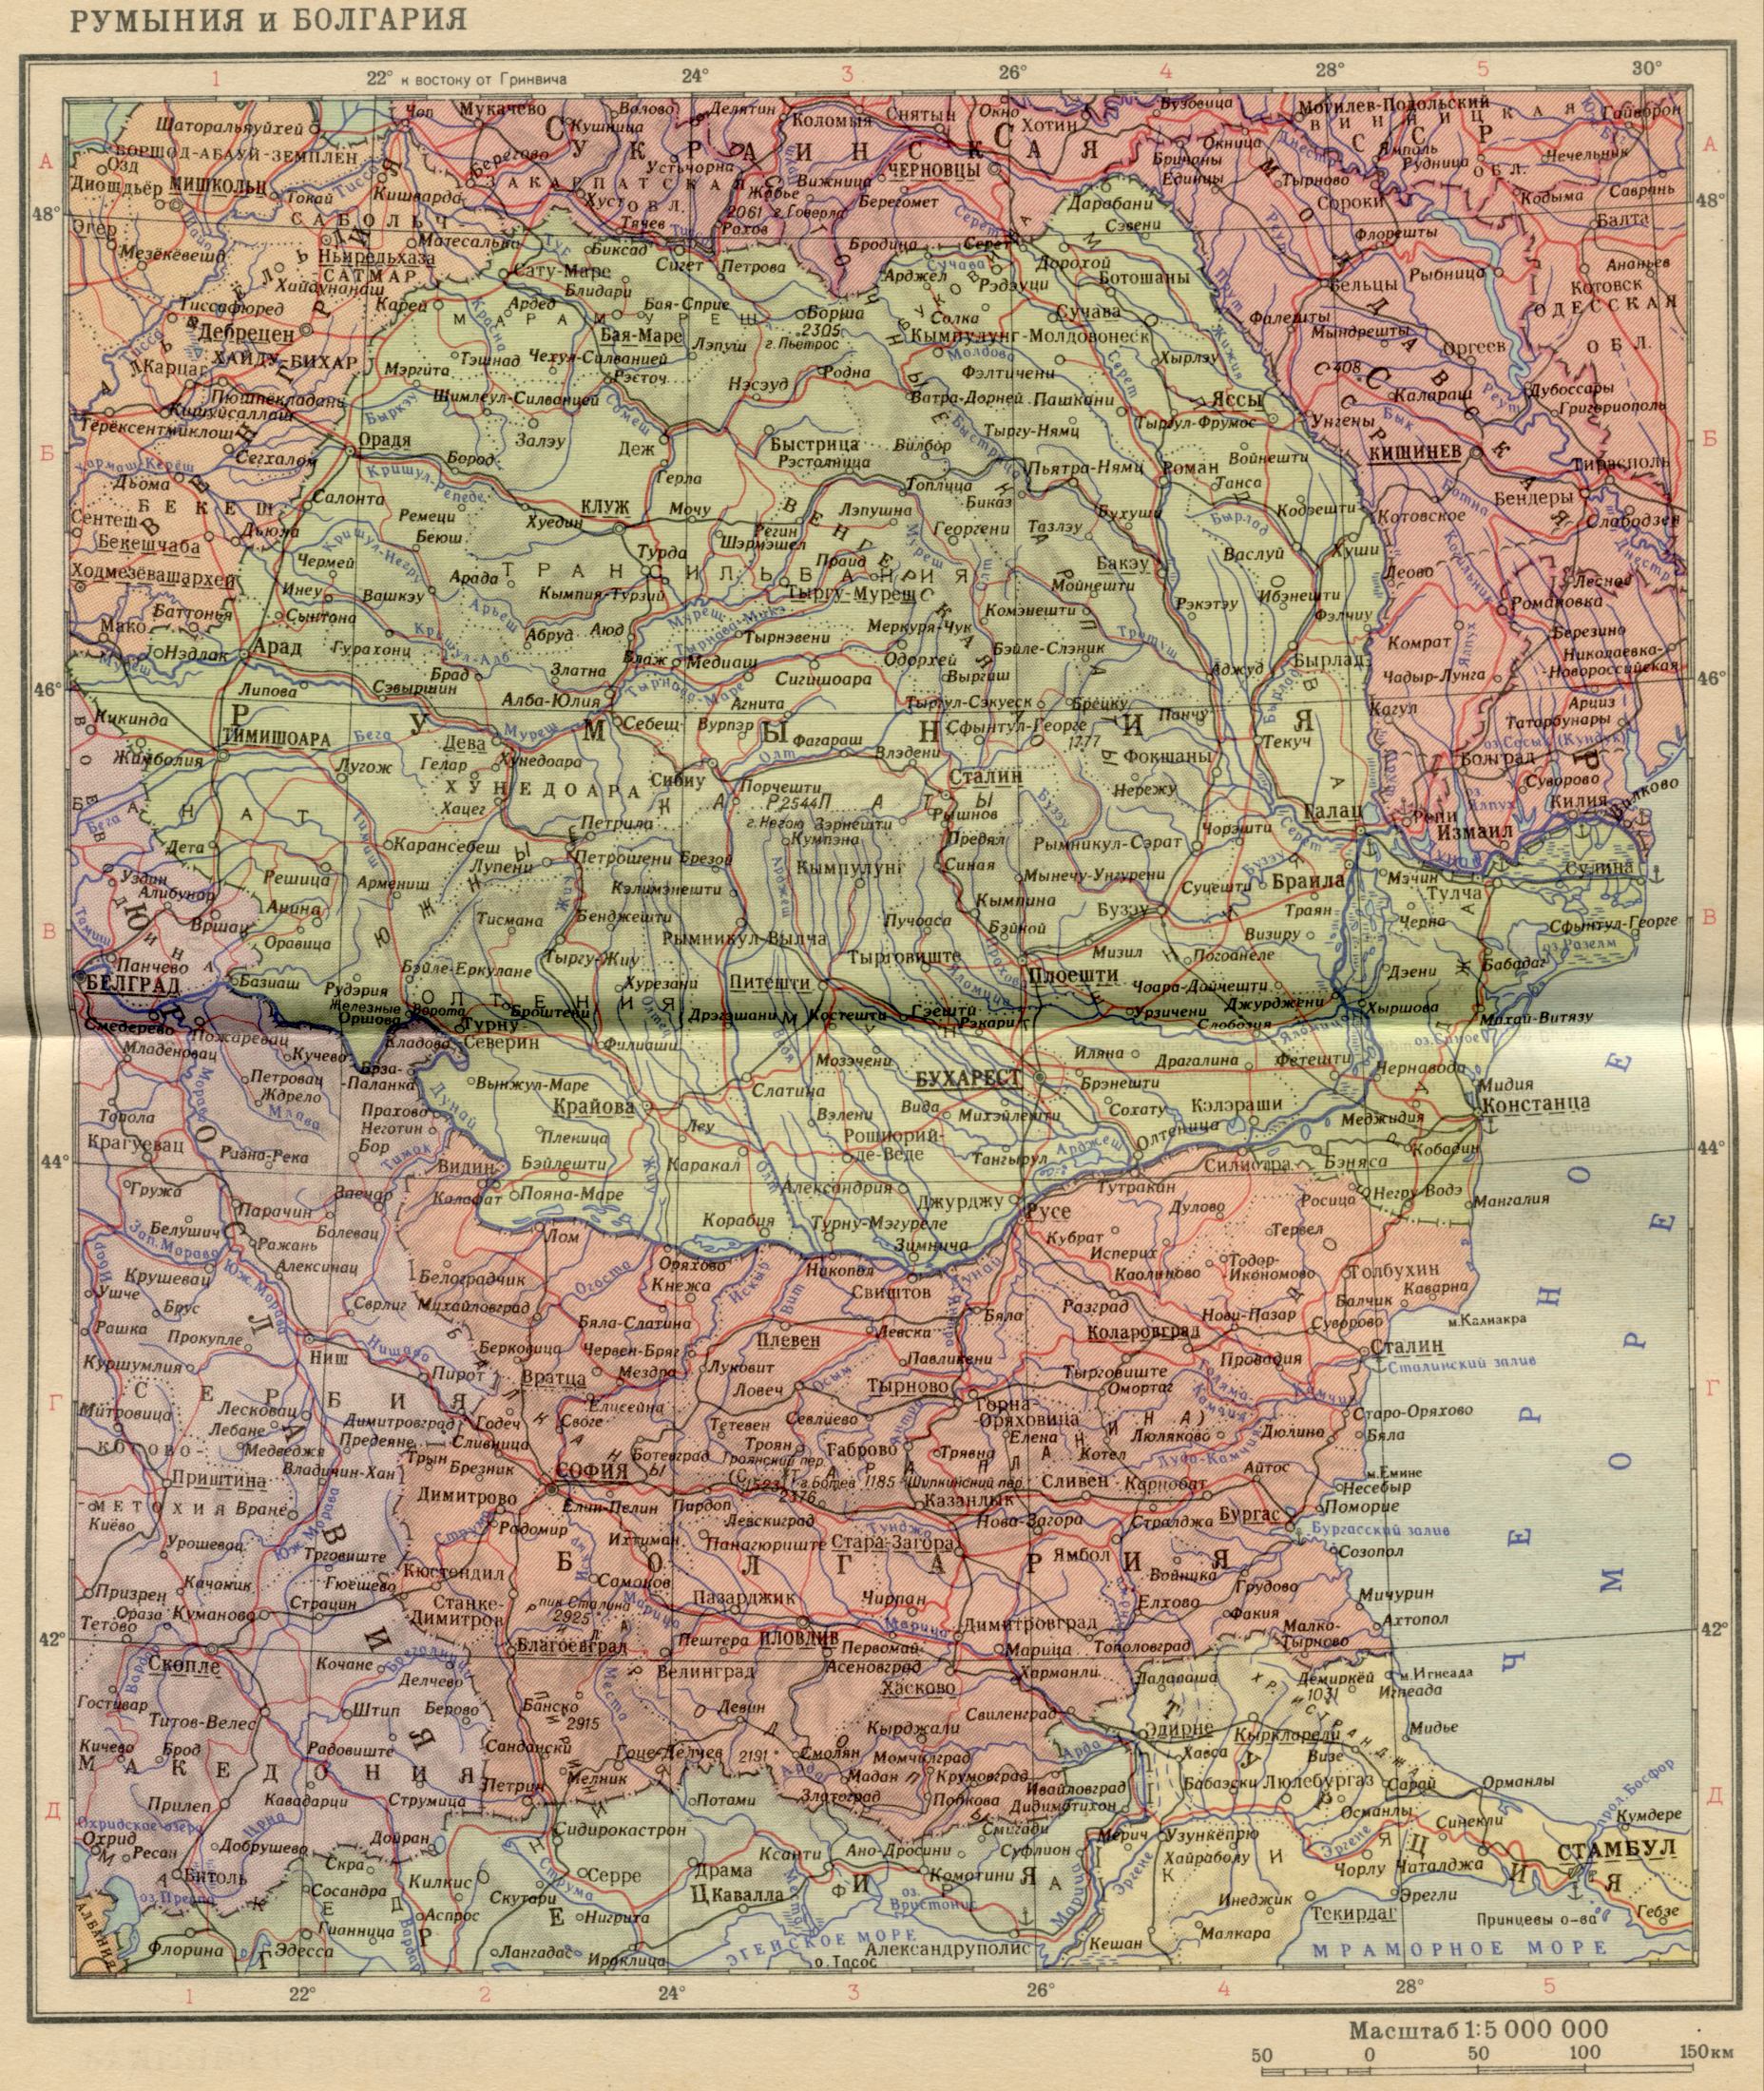 1956 год. Политическая карта мира - Румыния и Болгария в 1956 году. Скачать бесплатно подробную карту Дунай